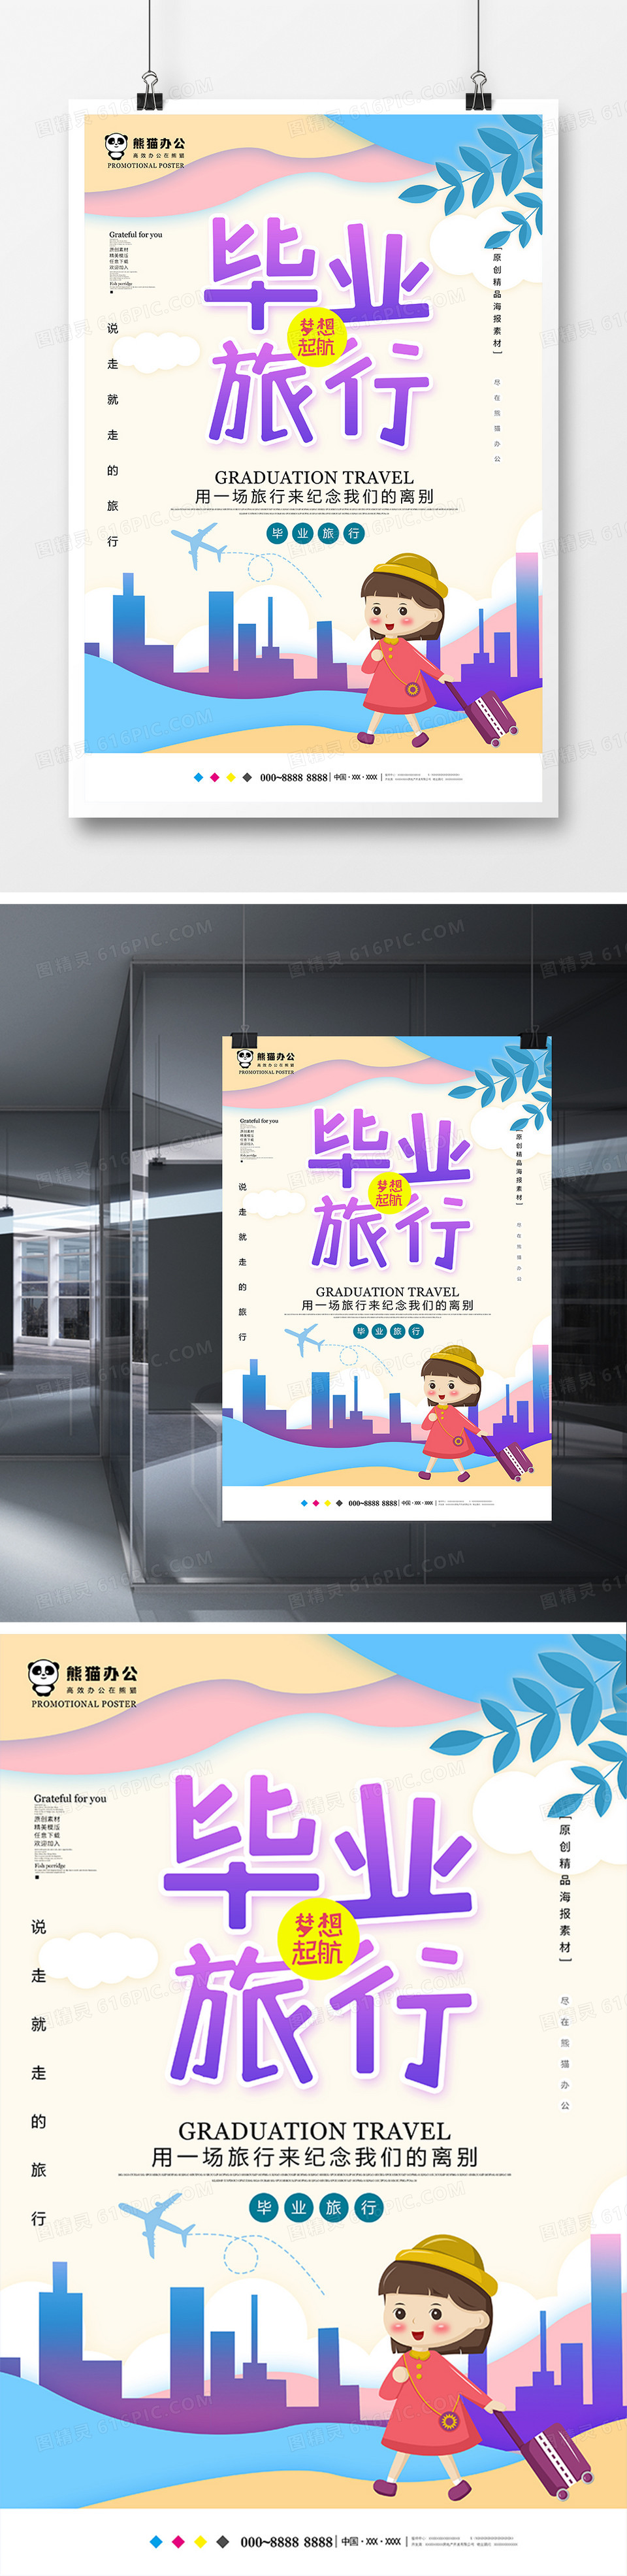 小清新毕业旅行旅游海报设计